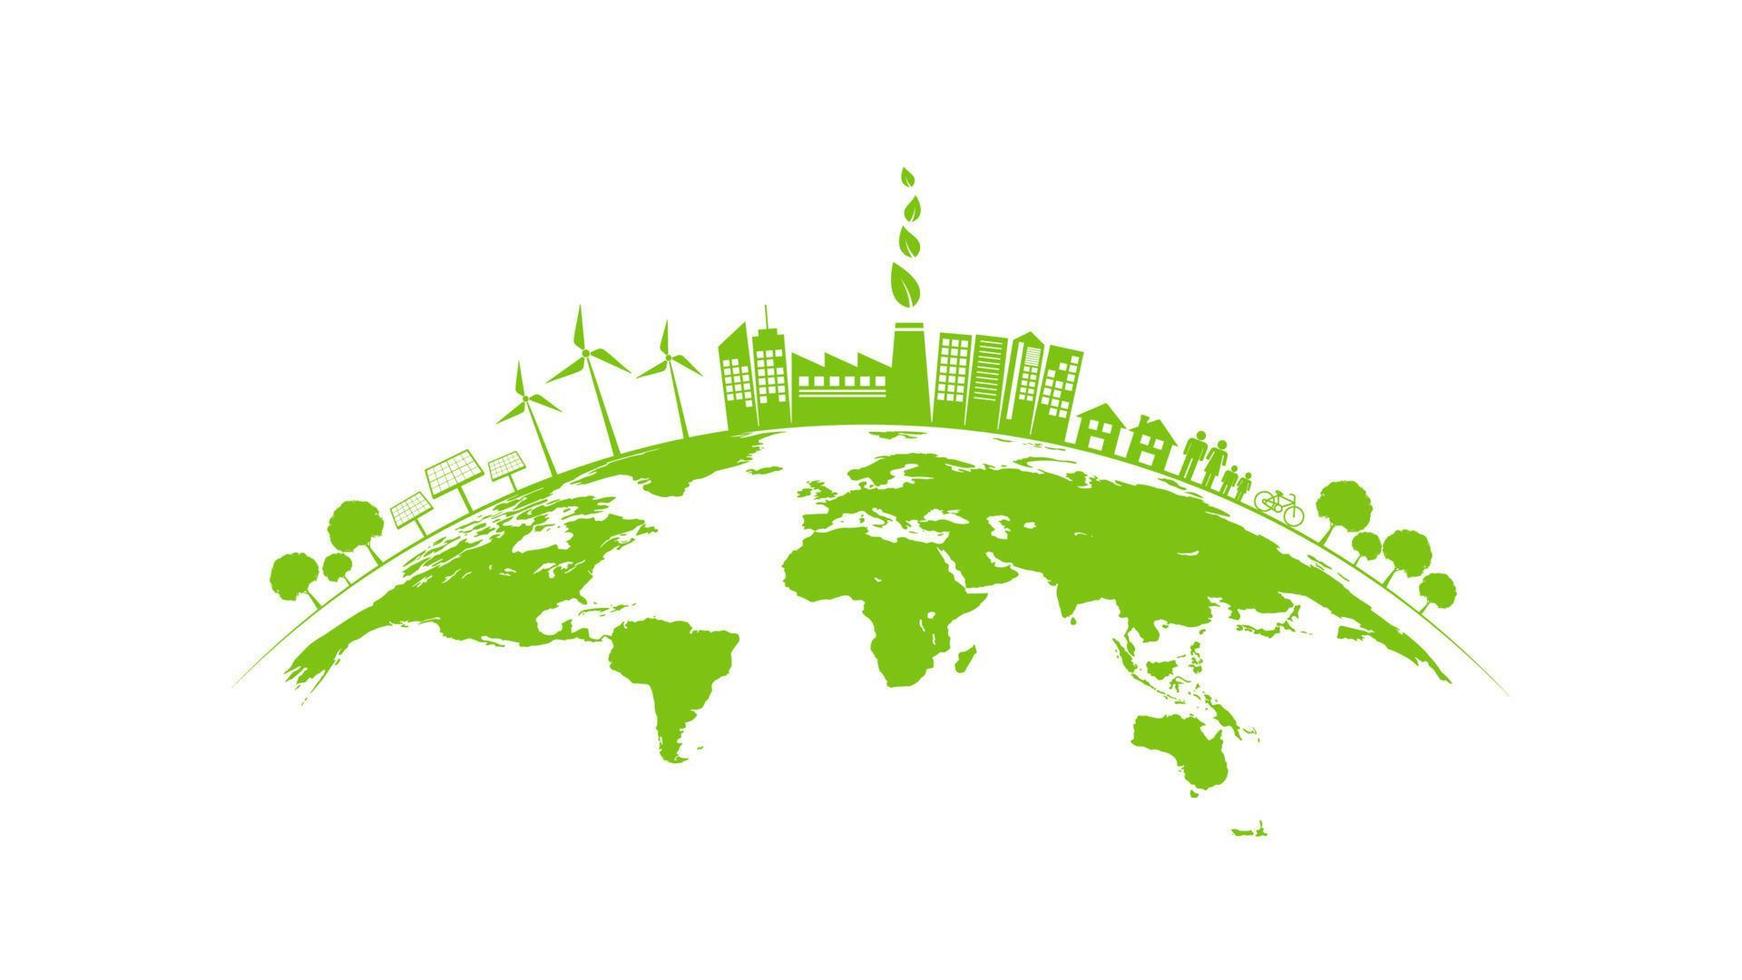 ekologikoncept med grön stad på jorden, världsmiljö och hållbar utvecklingskoncept, vektorillustration vektor